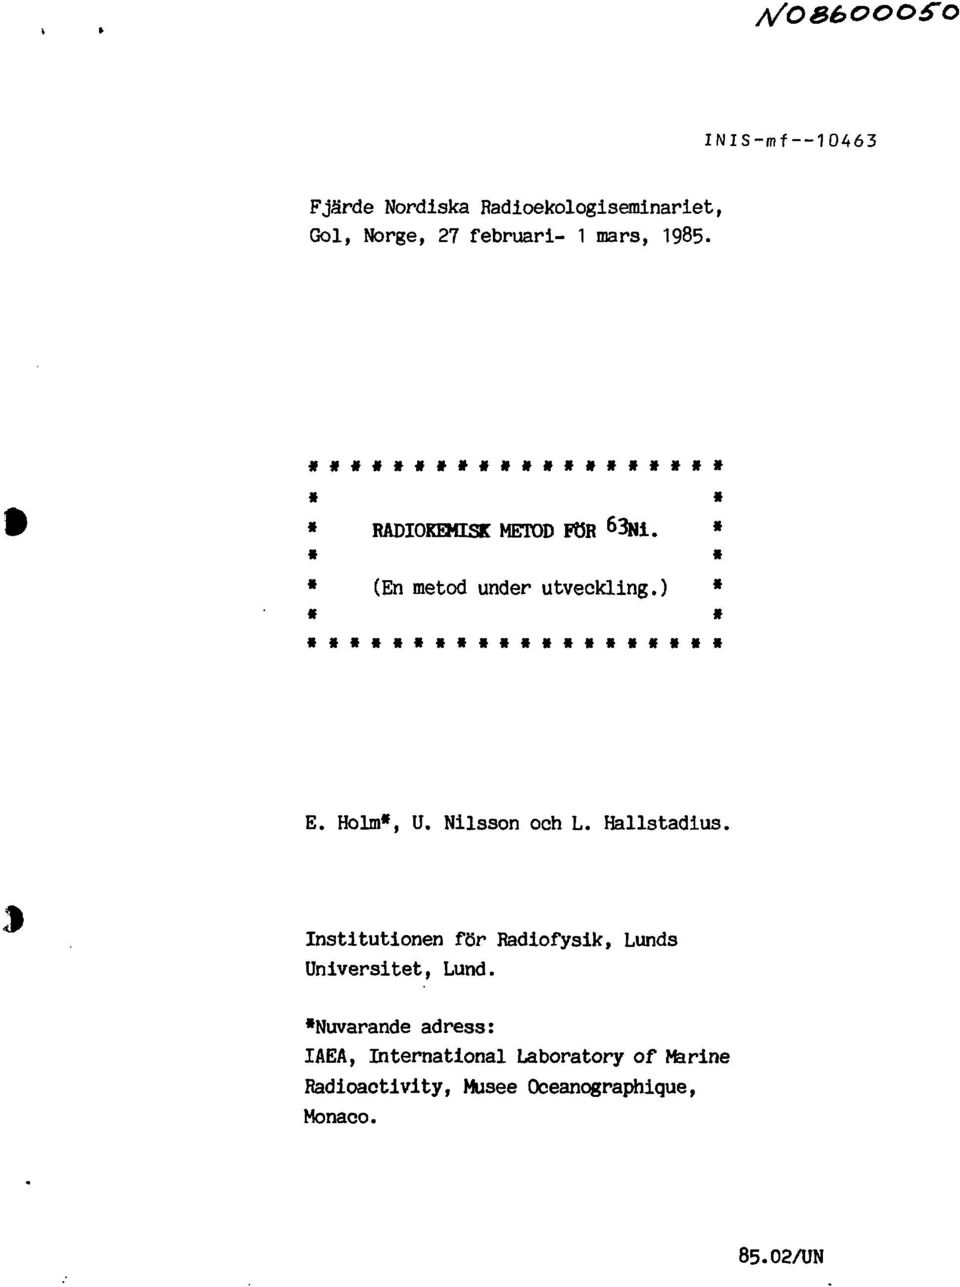 Holm*, U. Nilsson och L. Hallstadius. Institutionen för Radiofysik, Lunds Universitet, Lund.